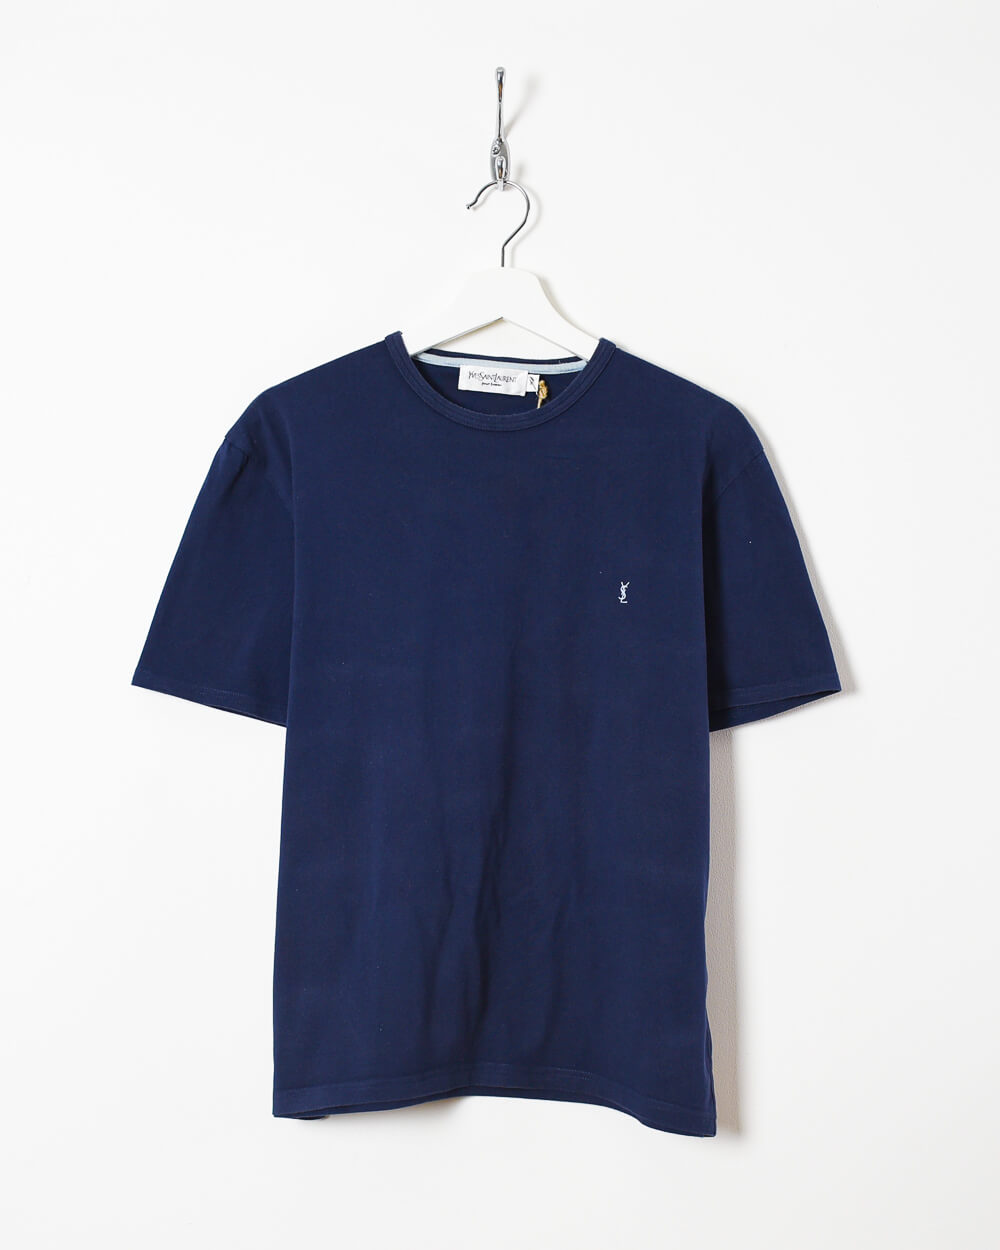 Navy Yves Saint Laurent T-Shirt - Medium